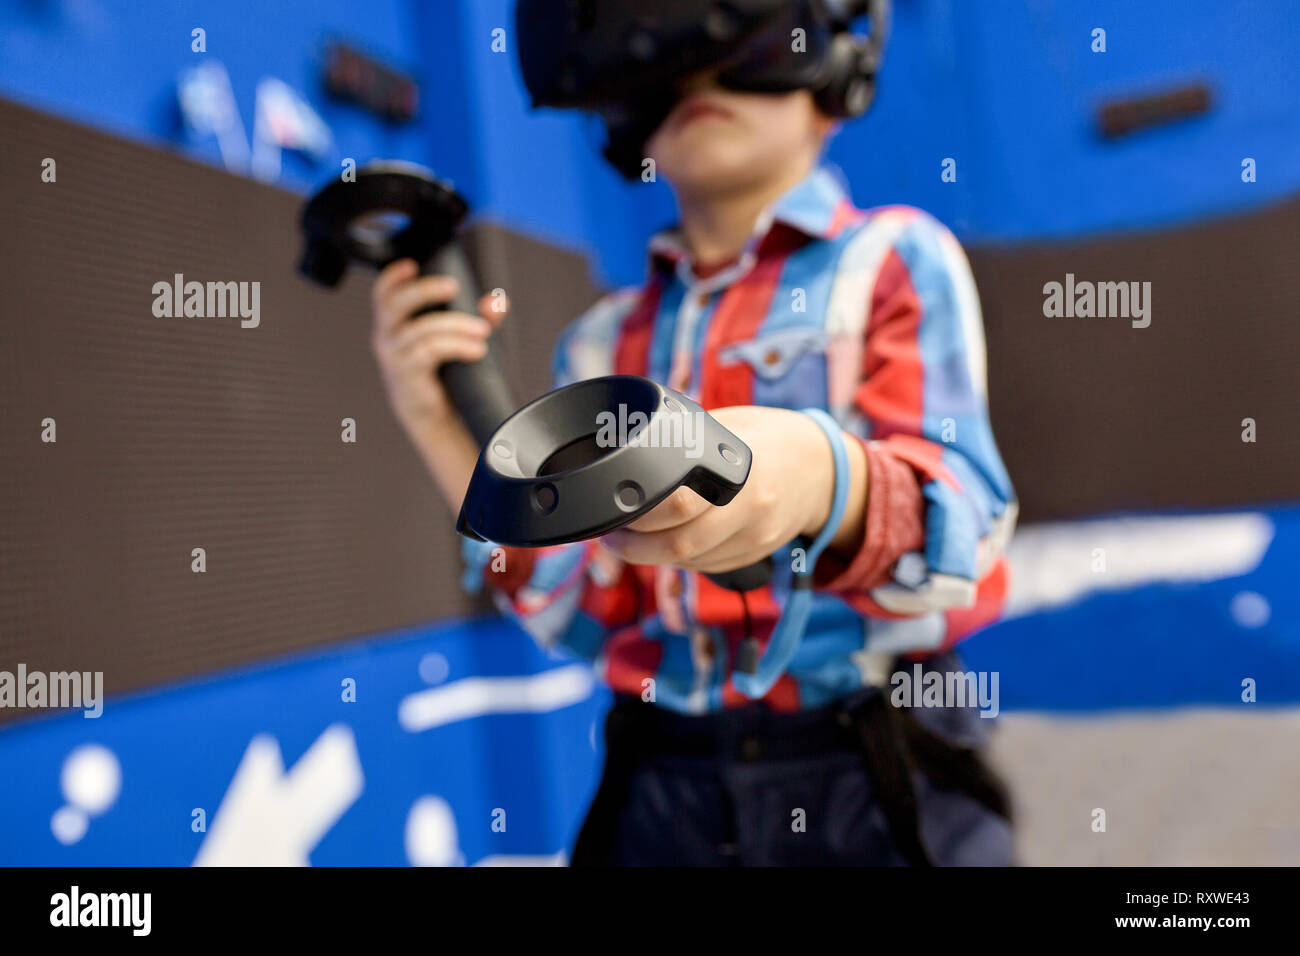 Moderne Technologie, Gaming und Personen Konzept - Junge in virtual reality  Headset oder die 3D-Brille Videospiel spielen bei Game Center  Stockfotografie - Alamy